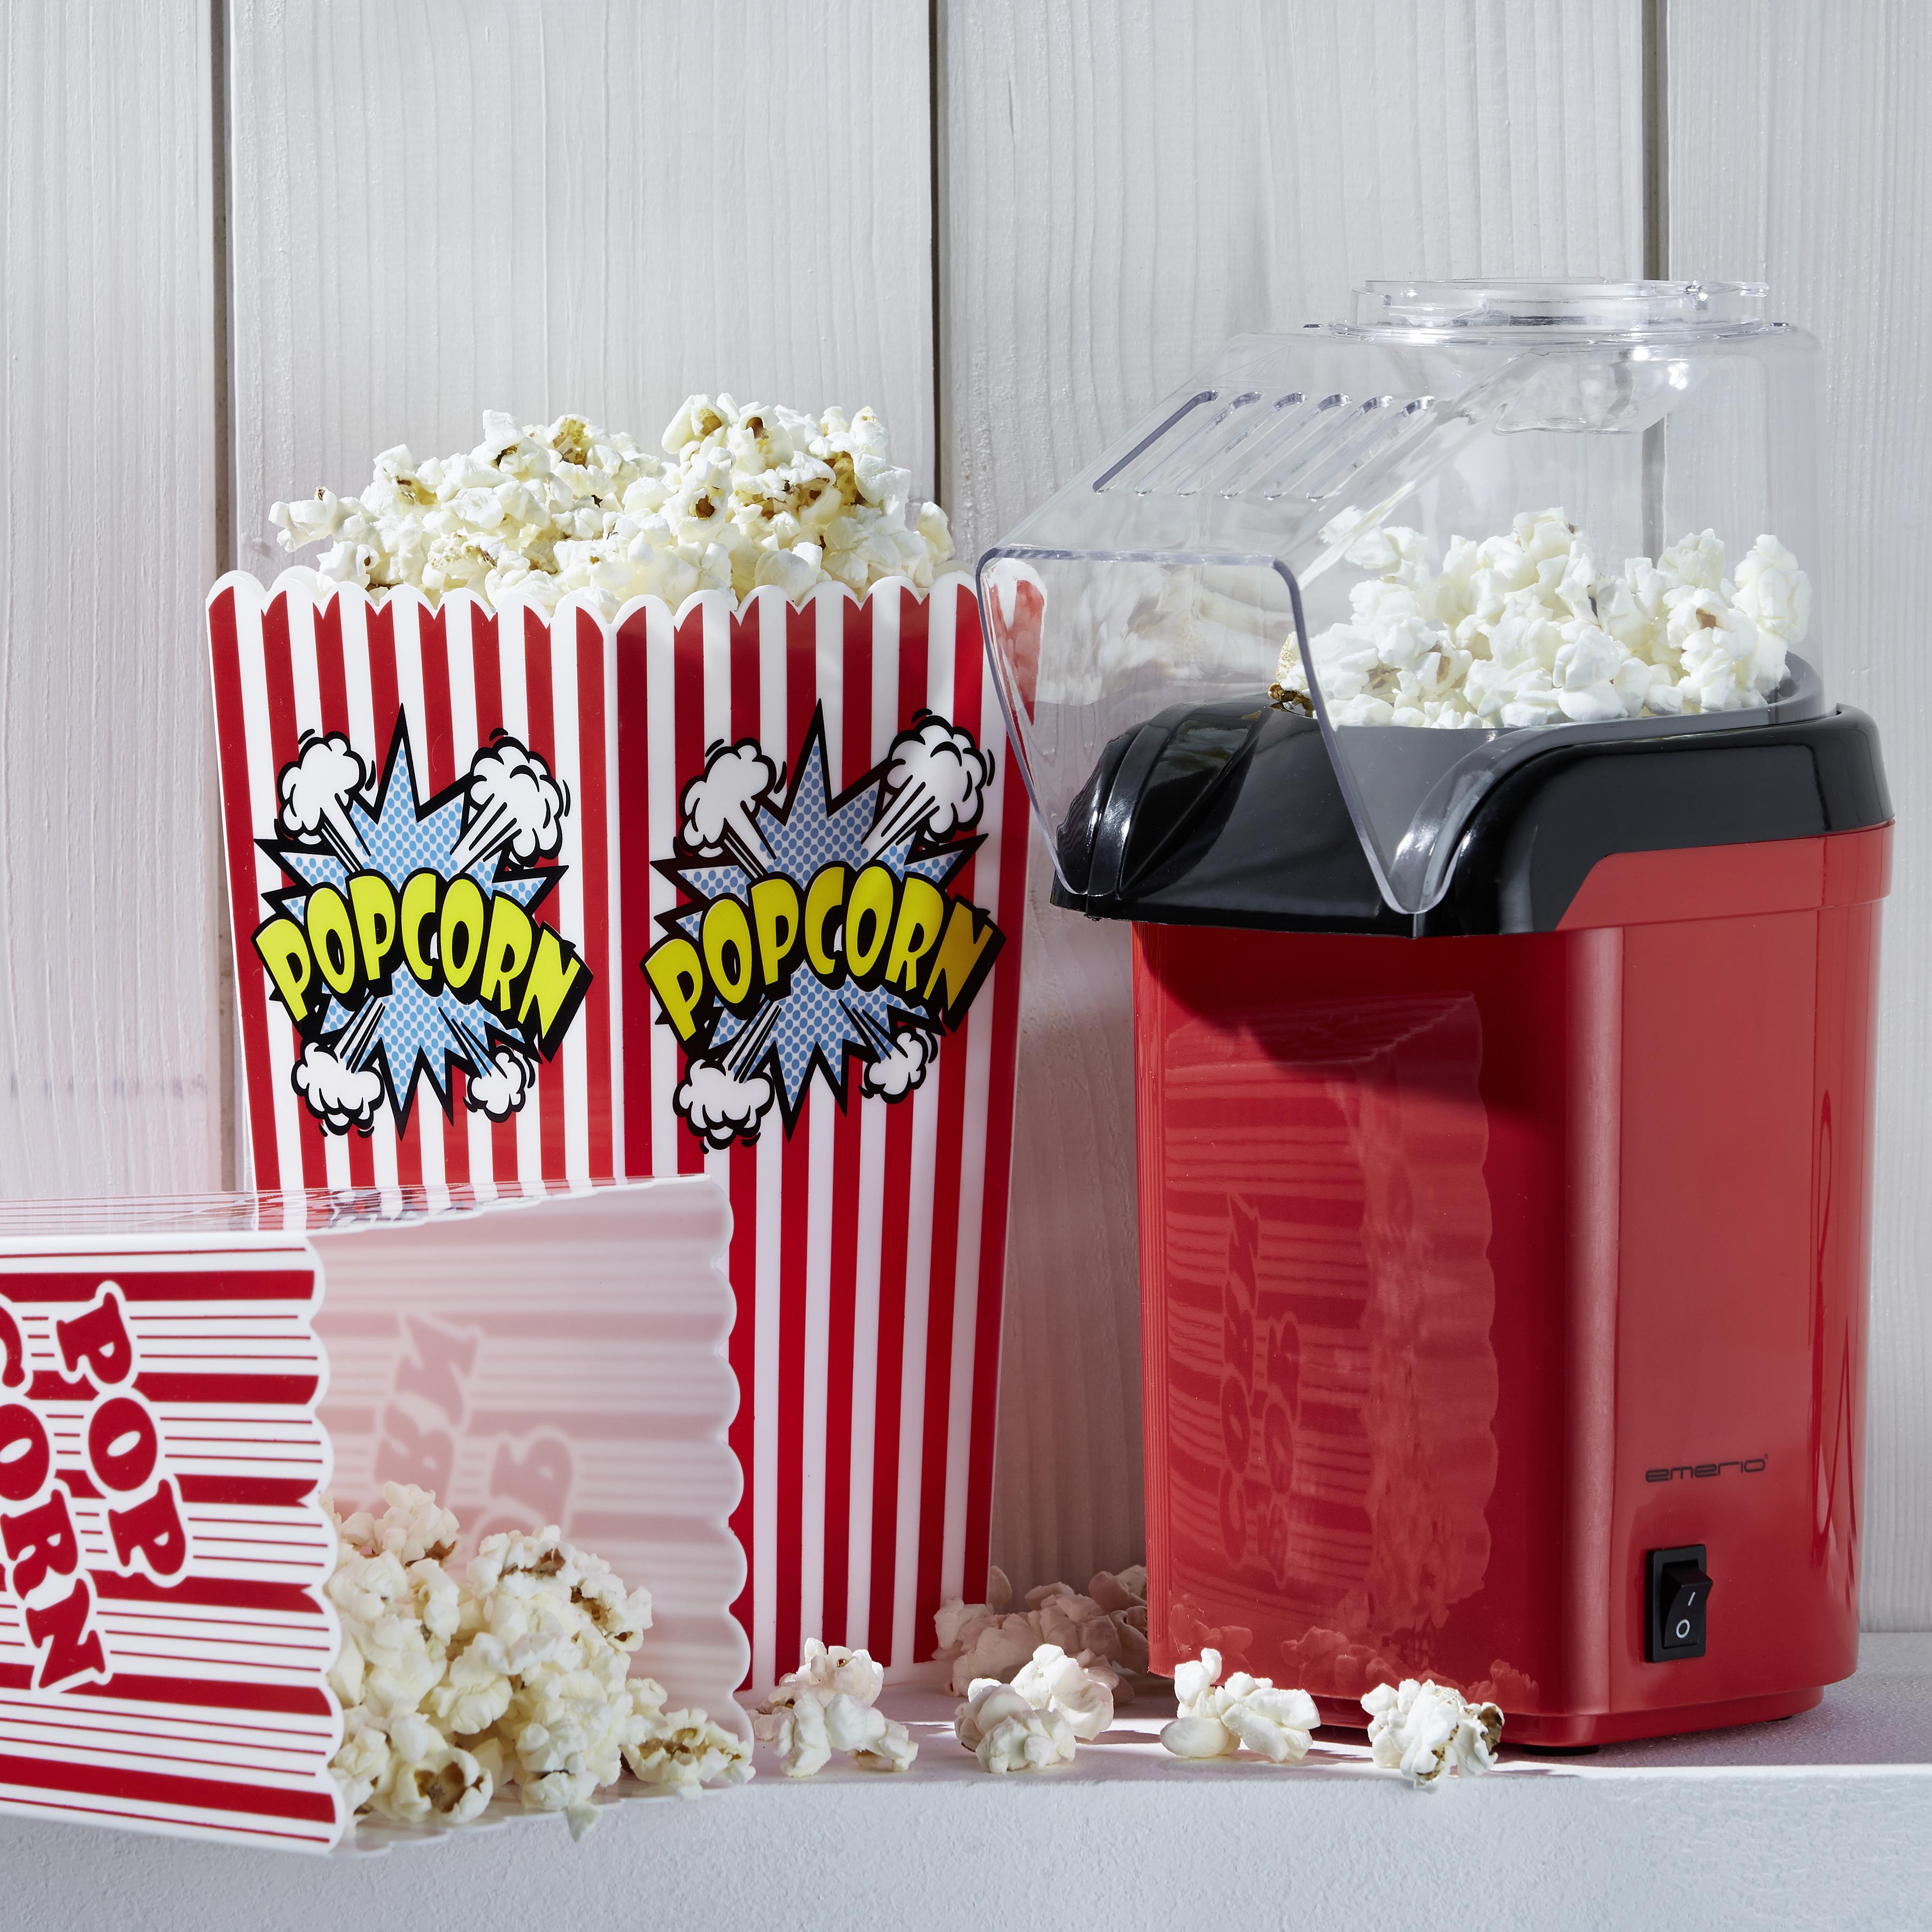 Popcorn Készítő Jan - Piros/Fekete, Műanyag (11,5/26/18cm) - Insido